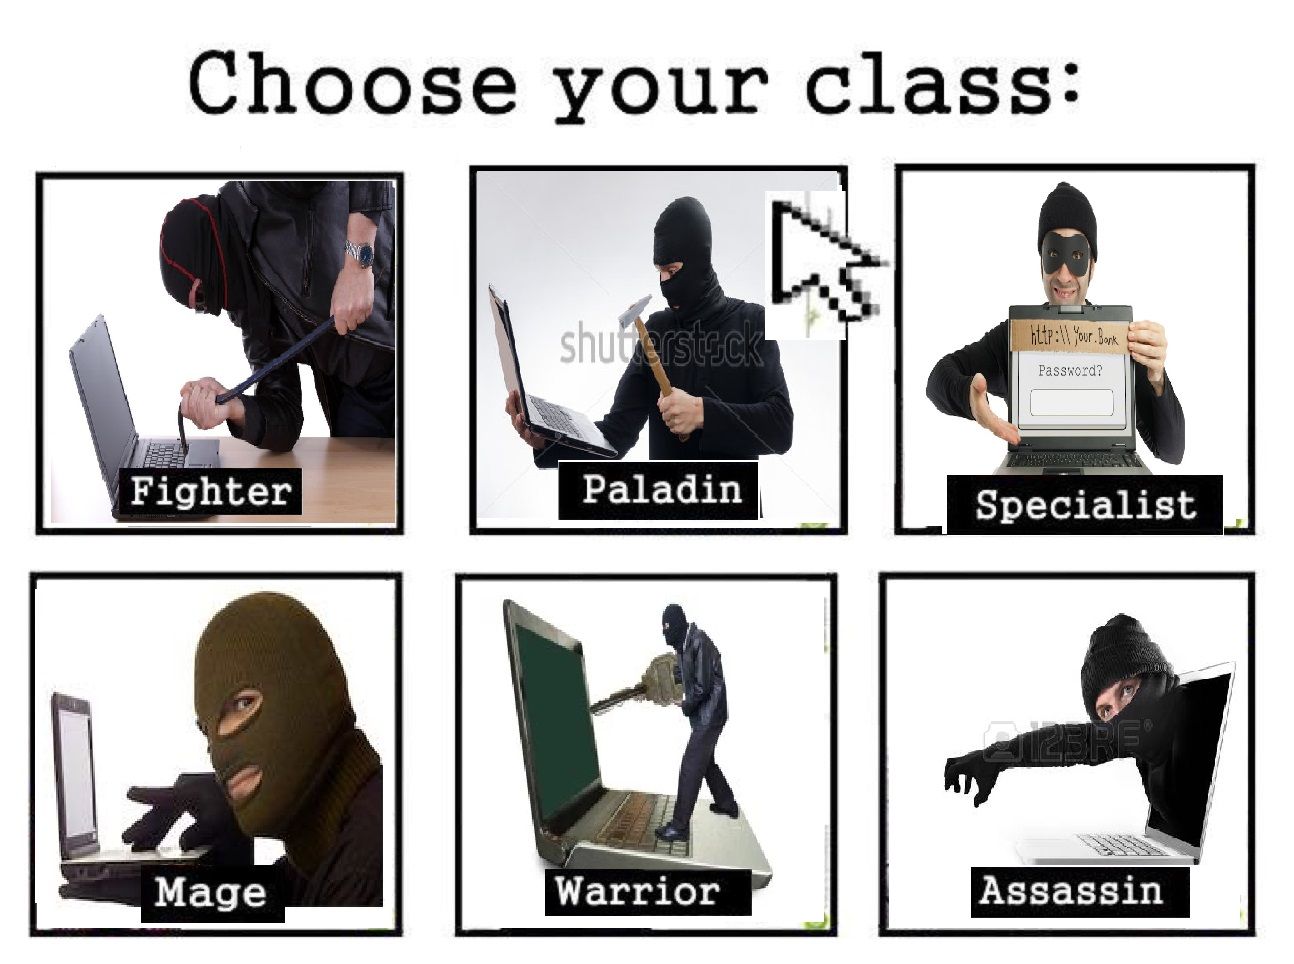 I heard Assassin class was OP